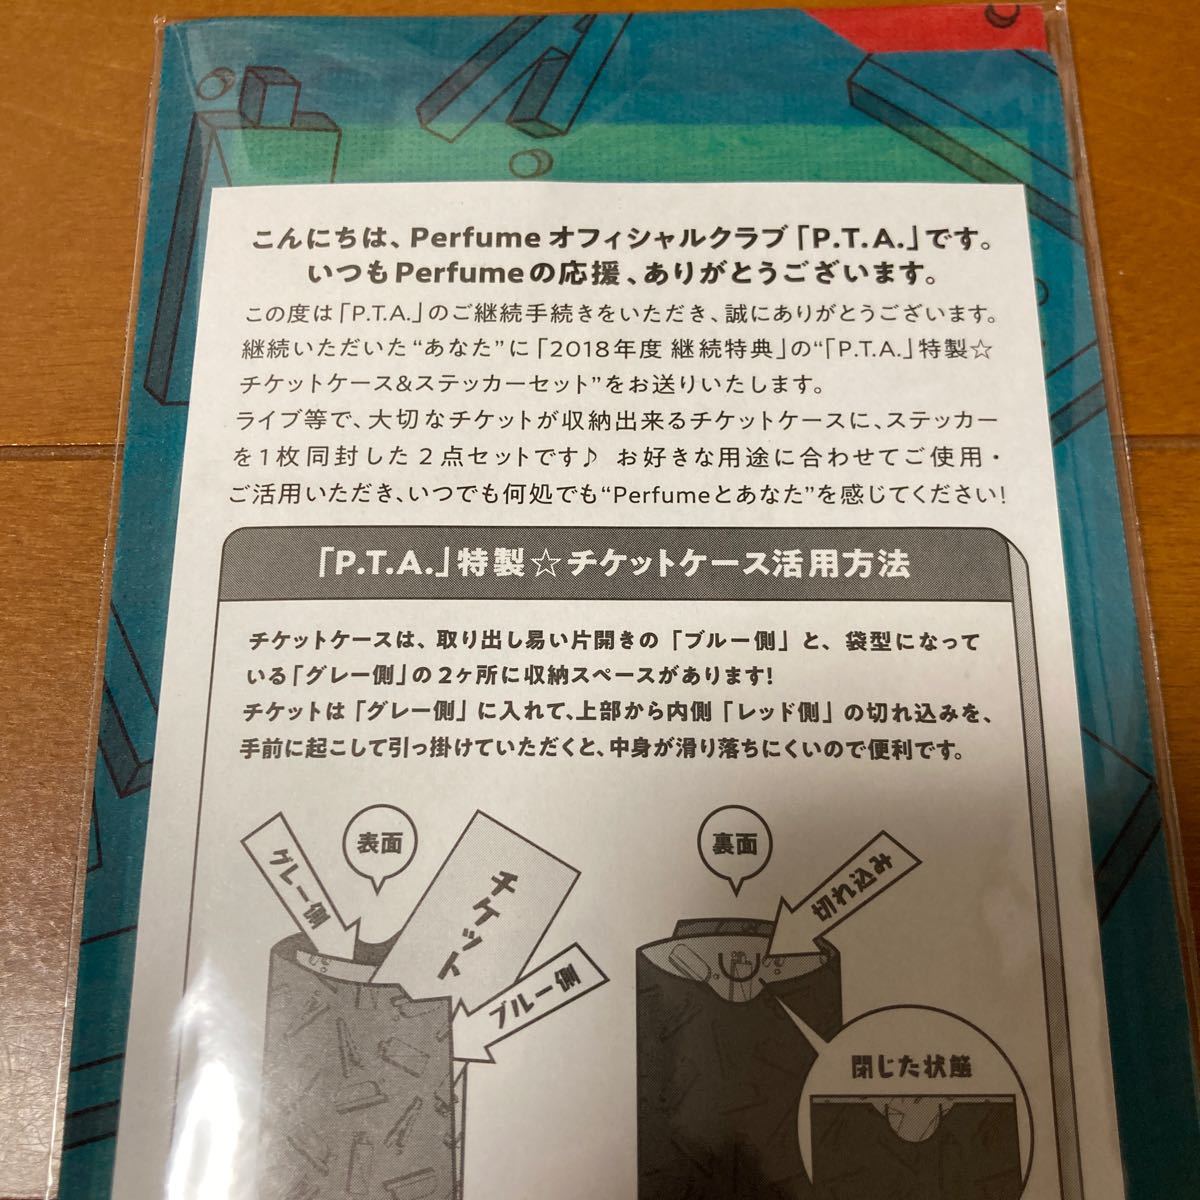 P.T.A. ticket case & sticker set puff .-mPerfume fan Club PTA member .. privilege 2018